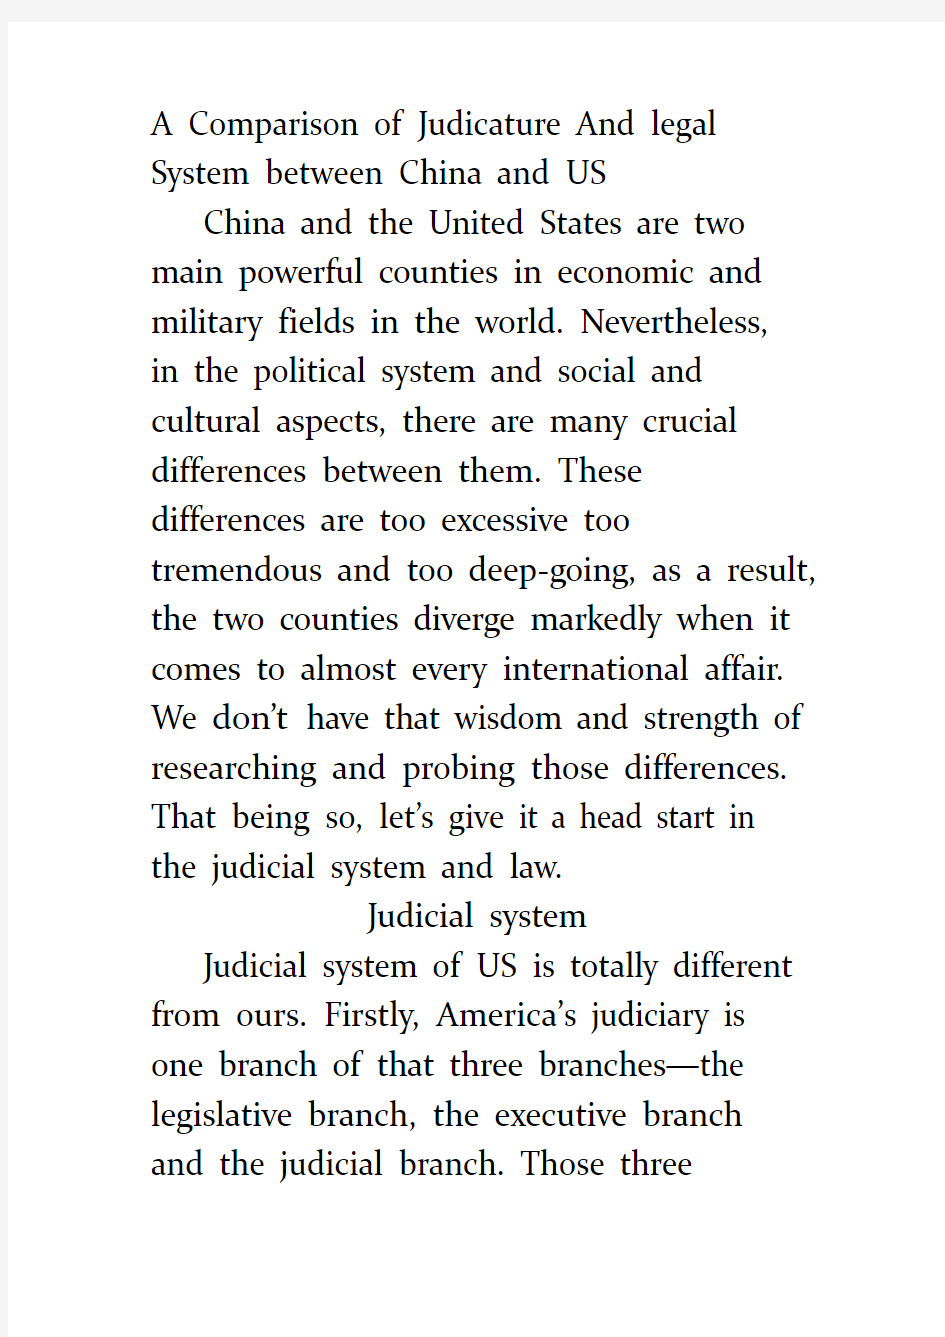 中美司法法律制度比较